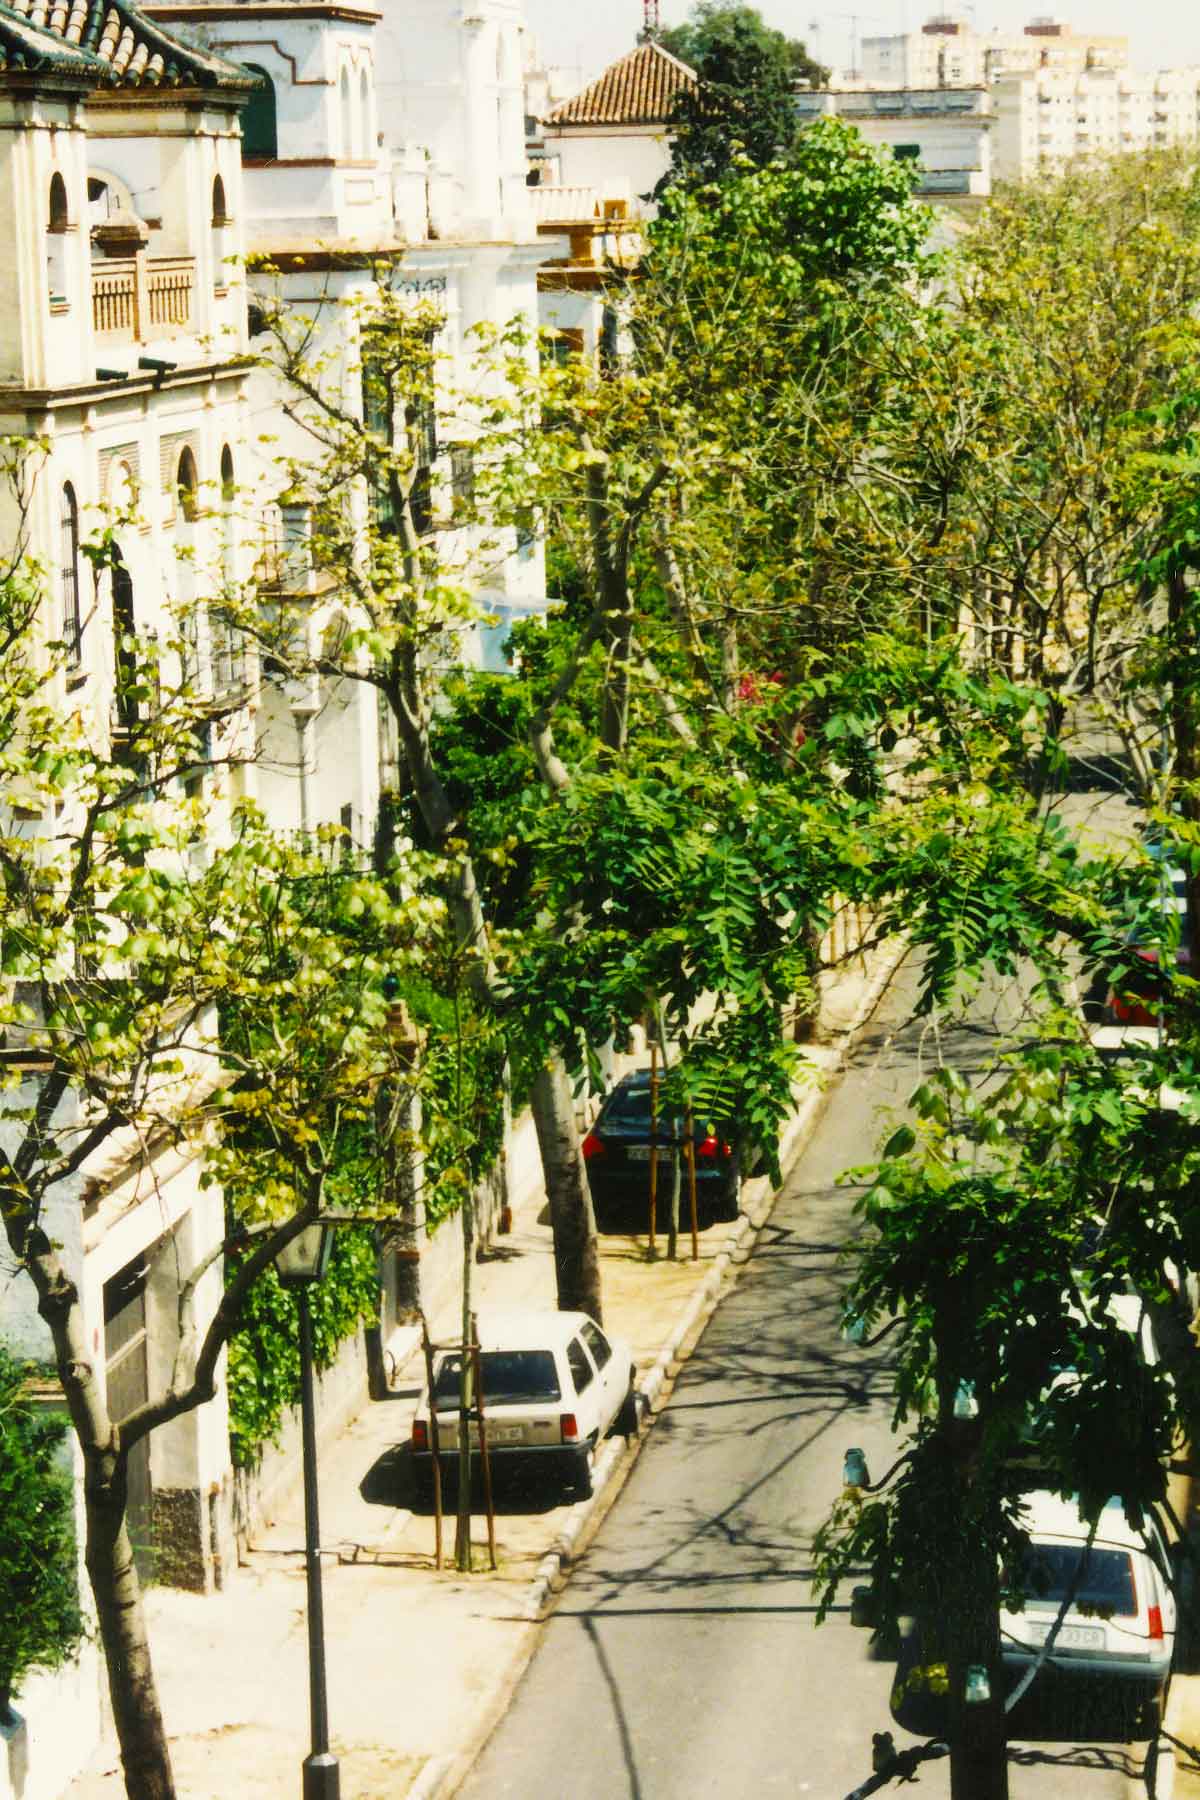 Porvenir Apartment - Spring Semester - Seville Spain - Study Abroad Journal - Steven Andrew Martin - 1998